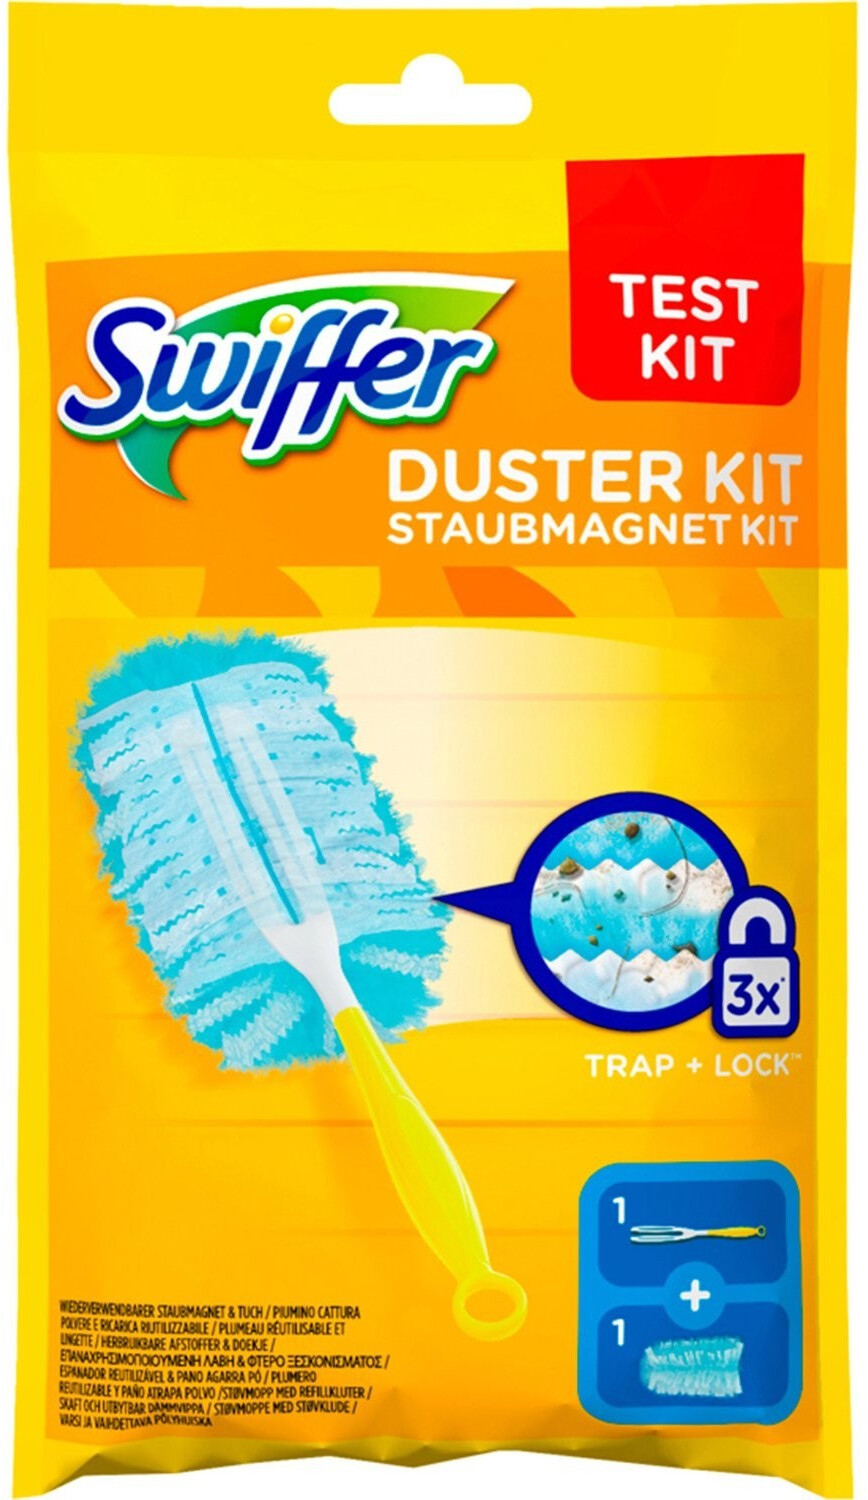 Swiffer Staubmagnet Kit 1 Griff und 3 Tücher, nimmt 3x mehr Staub & Haare  auf und schließt diese ein online kaufen bei